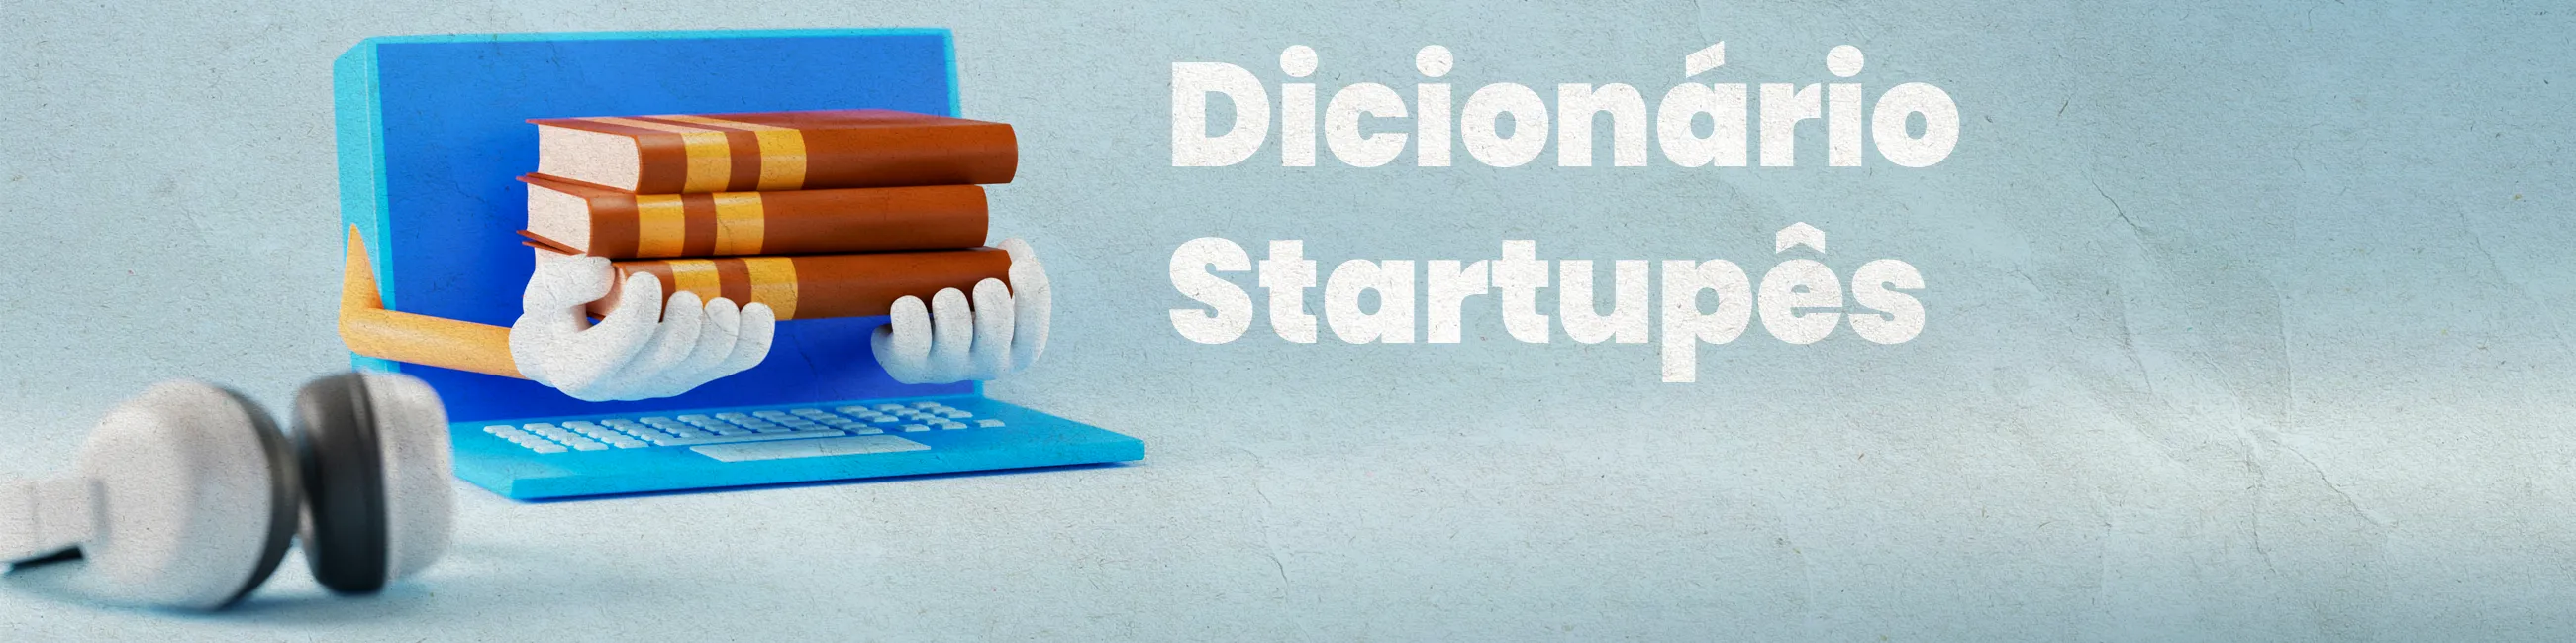 Desvendando o Vocabulário das Startups: Conheça os Termos Mais Usados